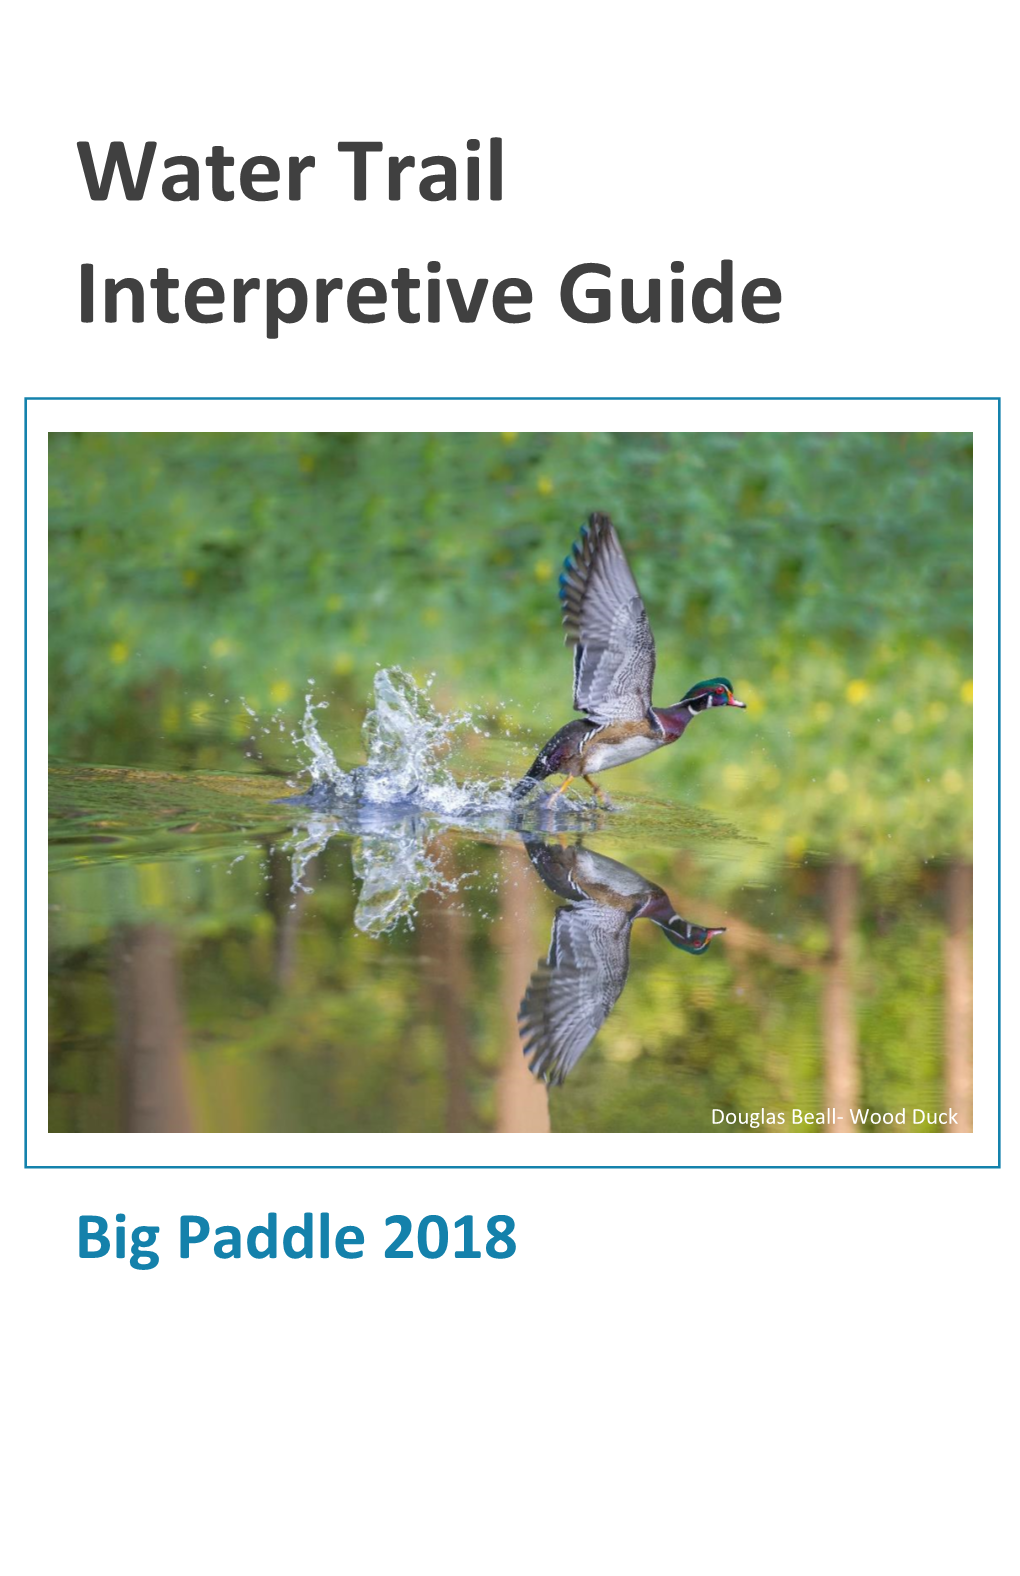 Water Trail Interpretive Guide